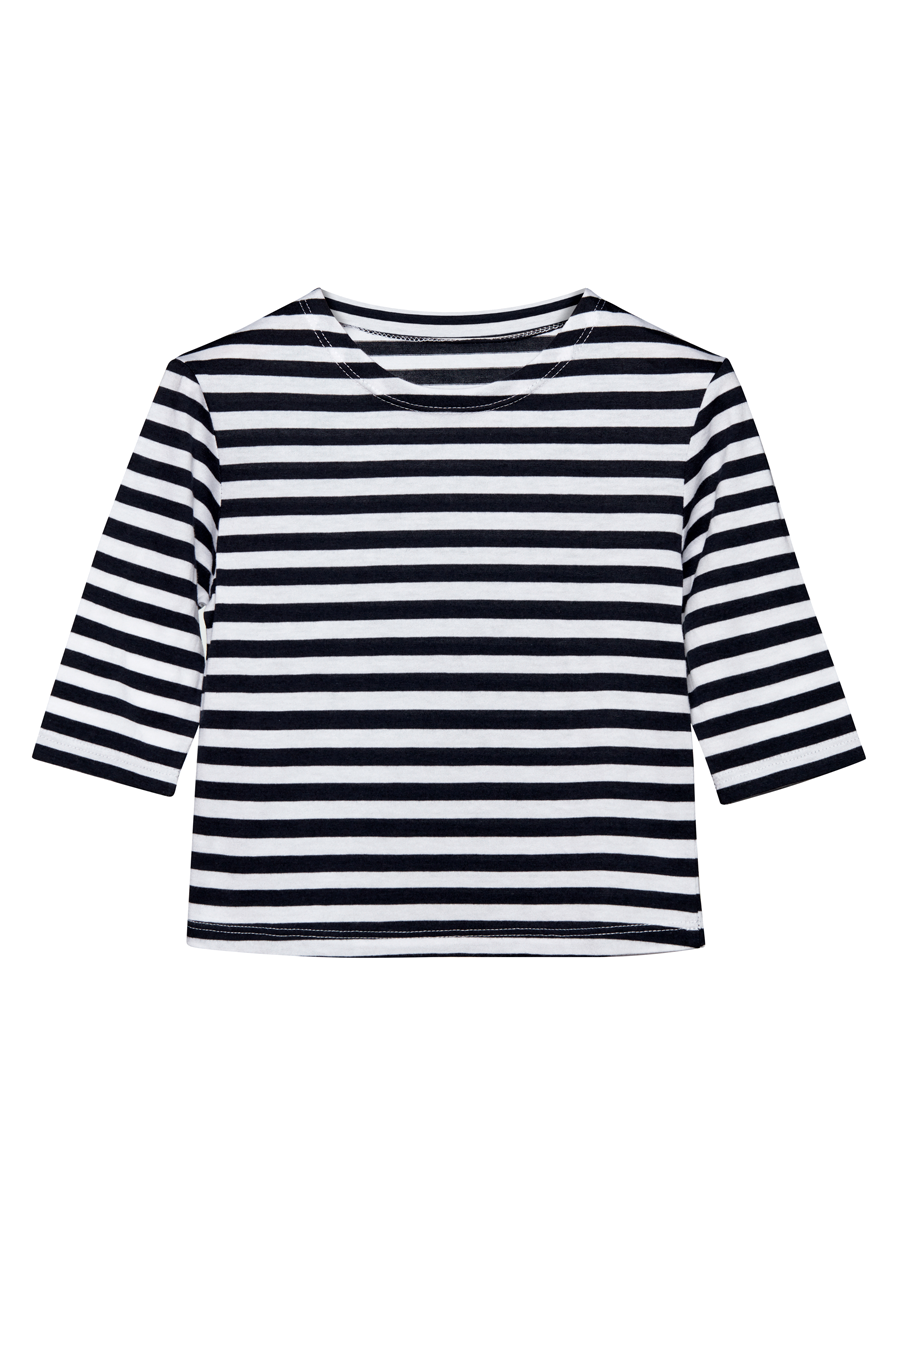 tru. Çocuk Lacivert/Beyaz Çizgili Düşük Omuzlu Uzun Kollu Breton Çocuk T-shirt